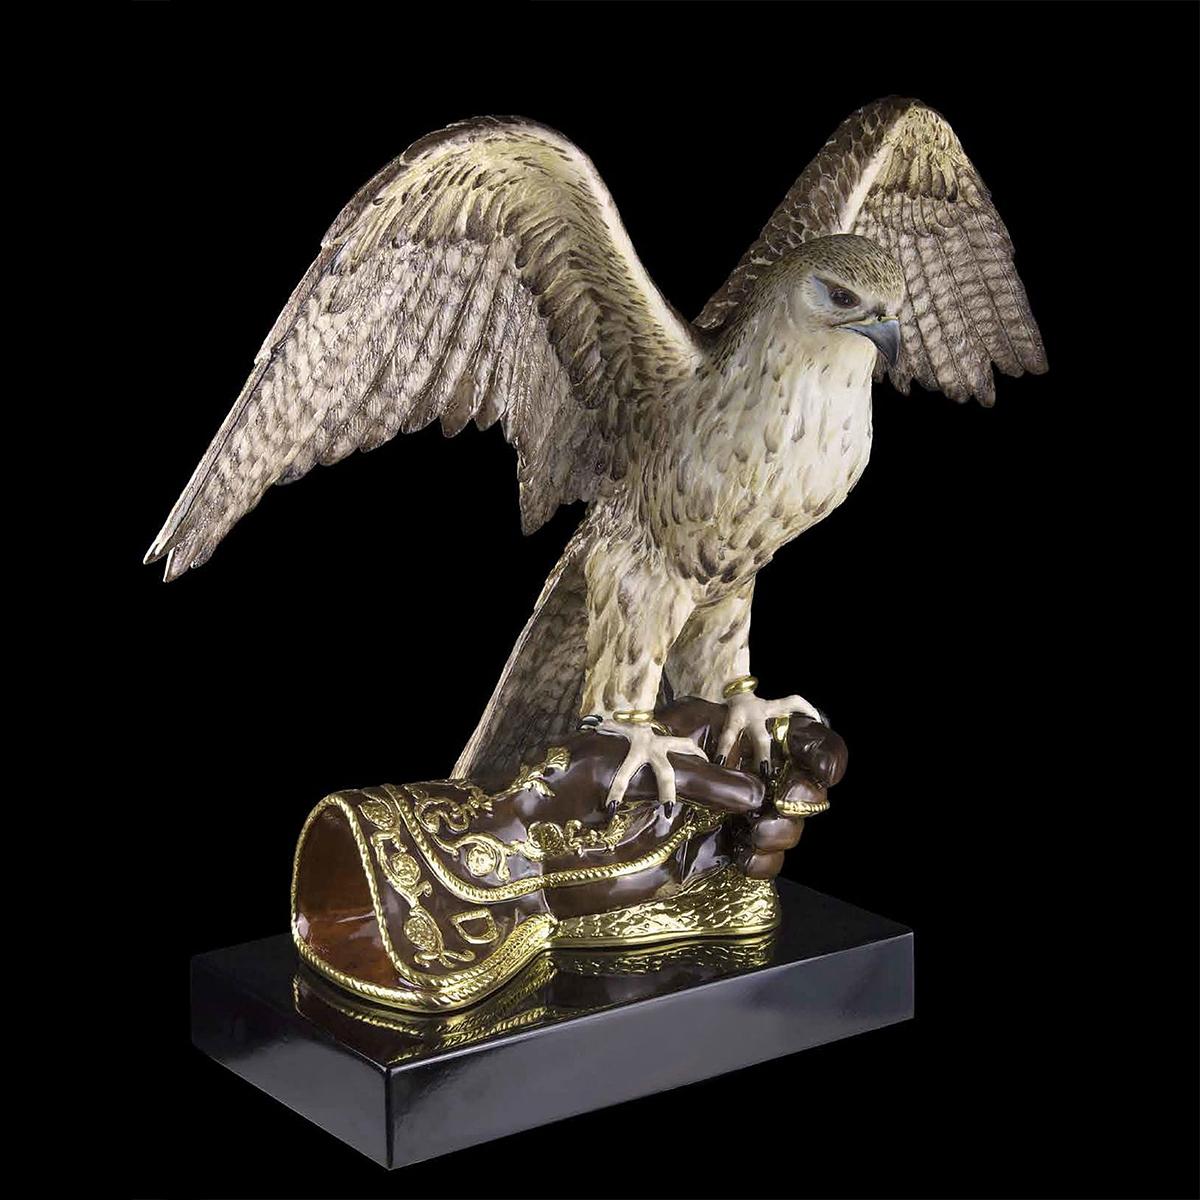 Sculpture Faucon volant en porcelaine faite à la main,
pièce peinte à la main avec finition en or 24 carats
Edition limitée de 38 pièces.